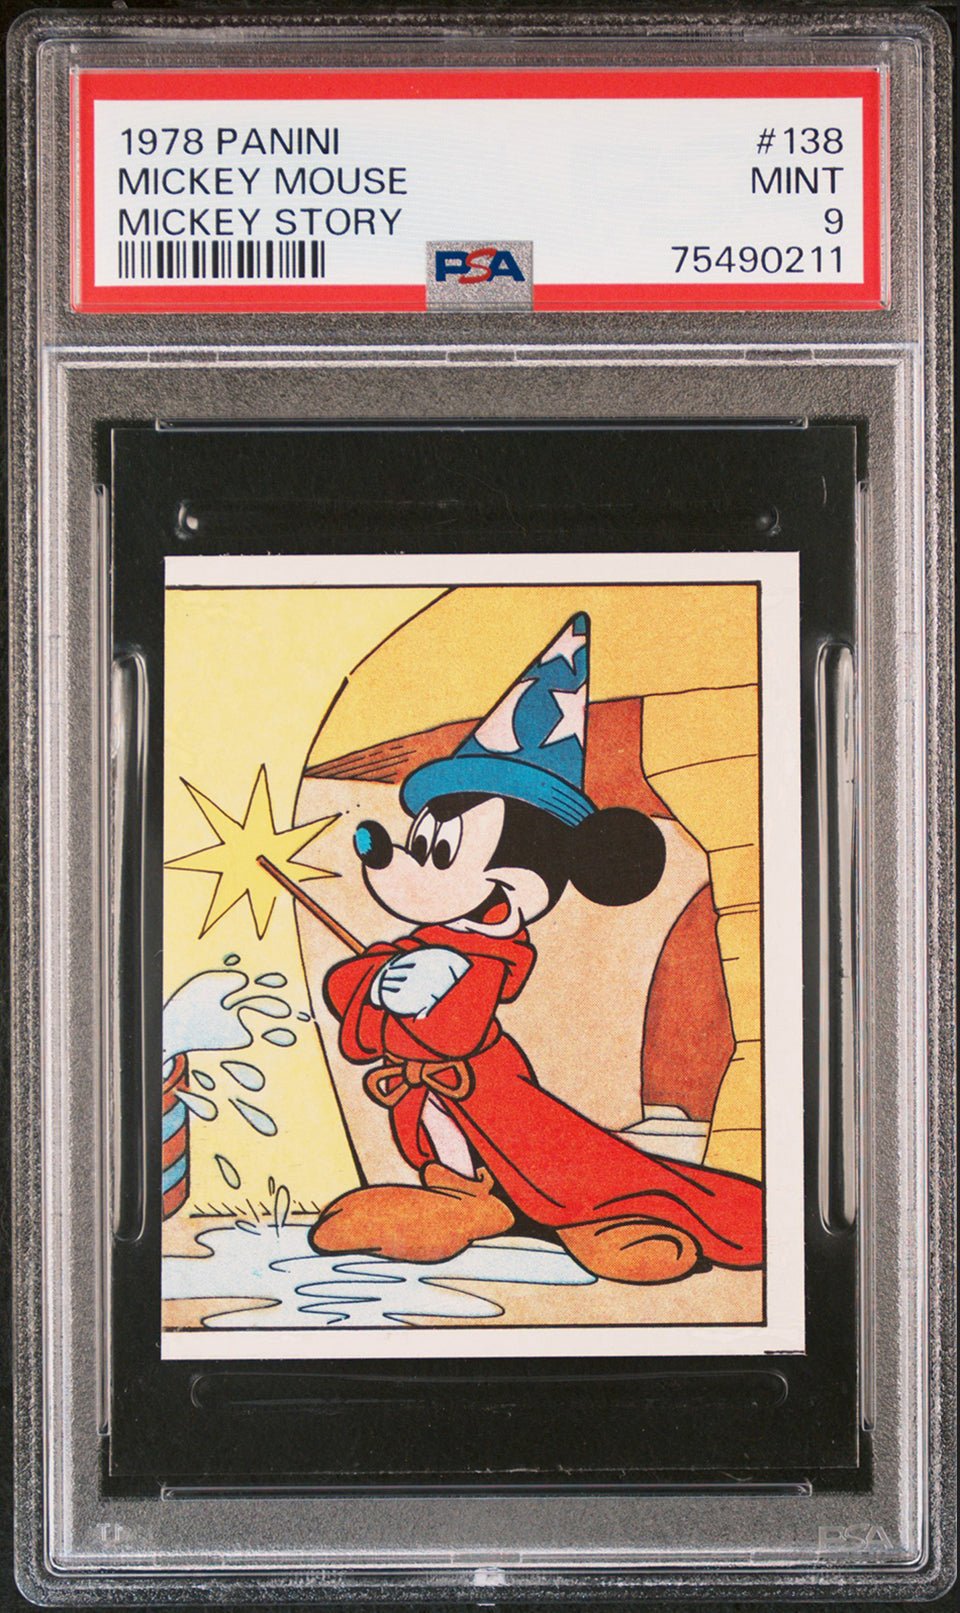 MICKEY MOUSE Fantasia PSA 9 1978 Panini Mickey Story Sticker #138 Disney Base Graded Cards - Hobby Gems